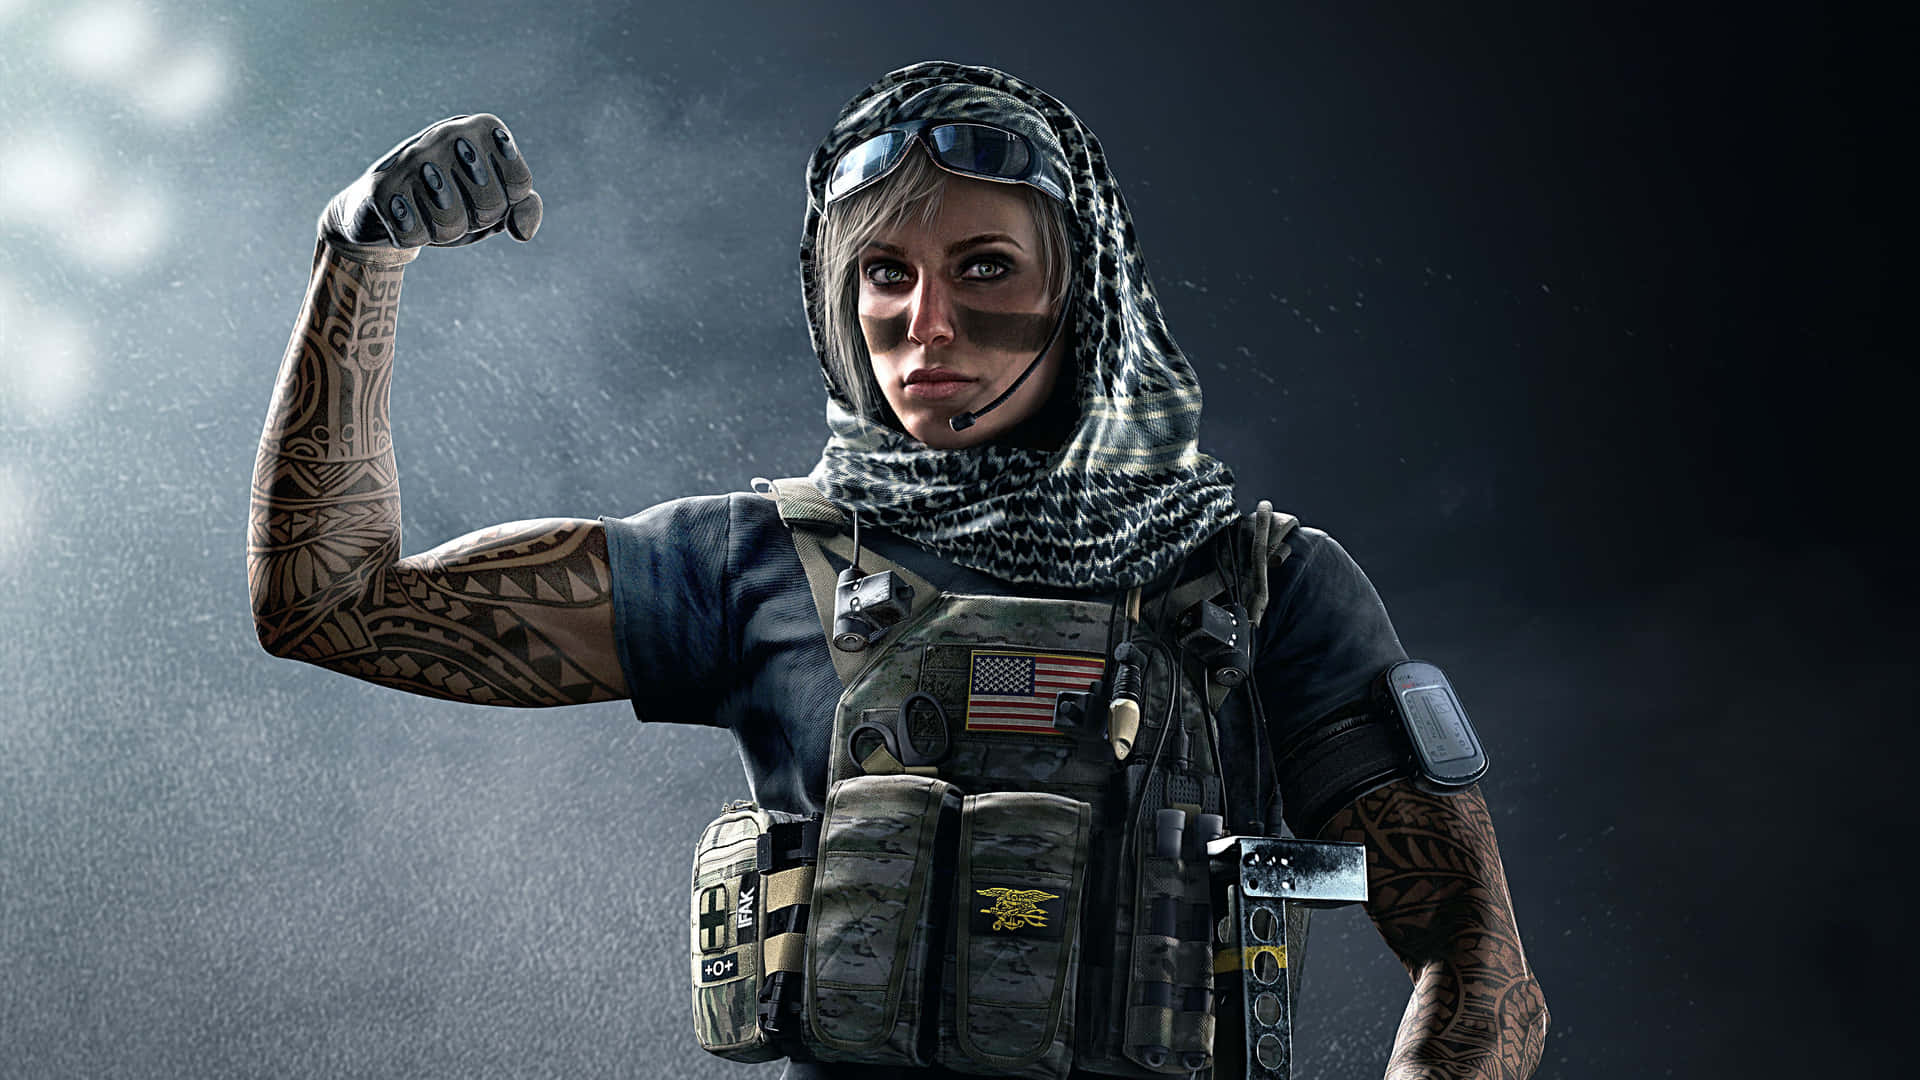 Enkvinna I En Militär Uniform Håller Sin Knuten Hand. Wallpaper